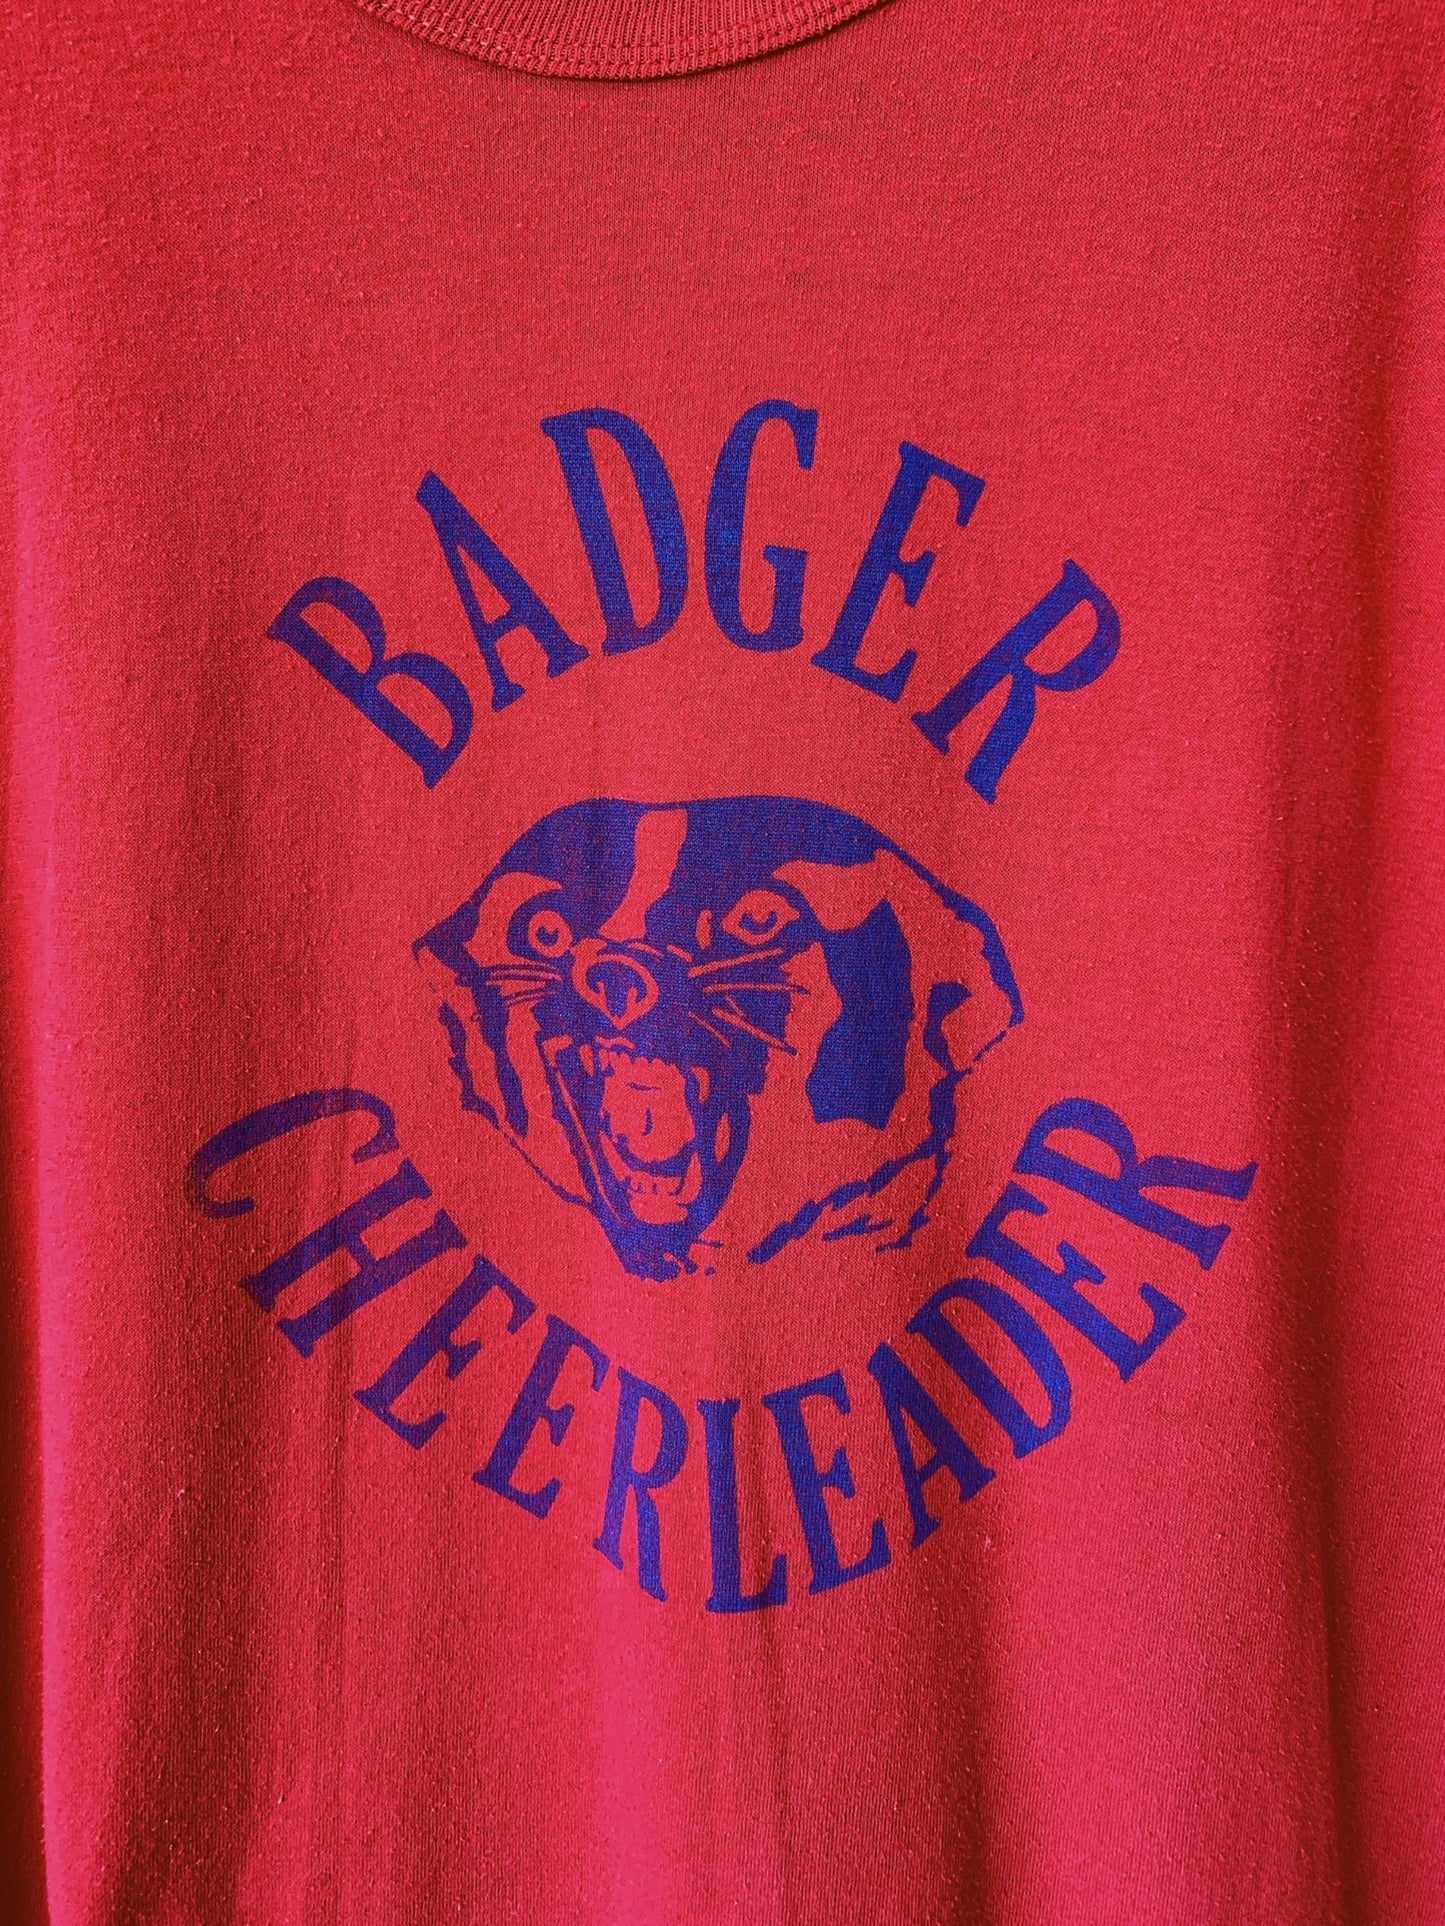 Vintage Badger Cheerleader Tee